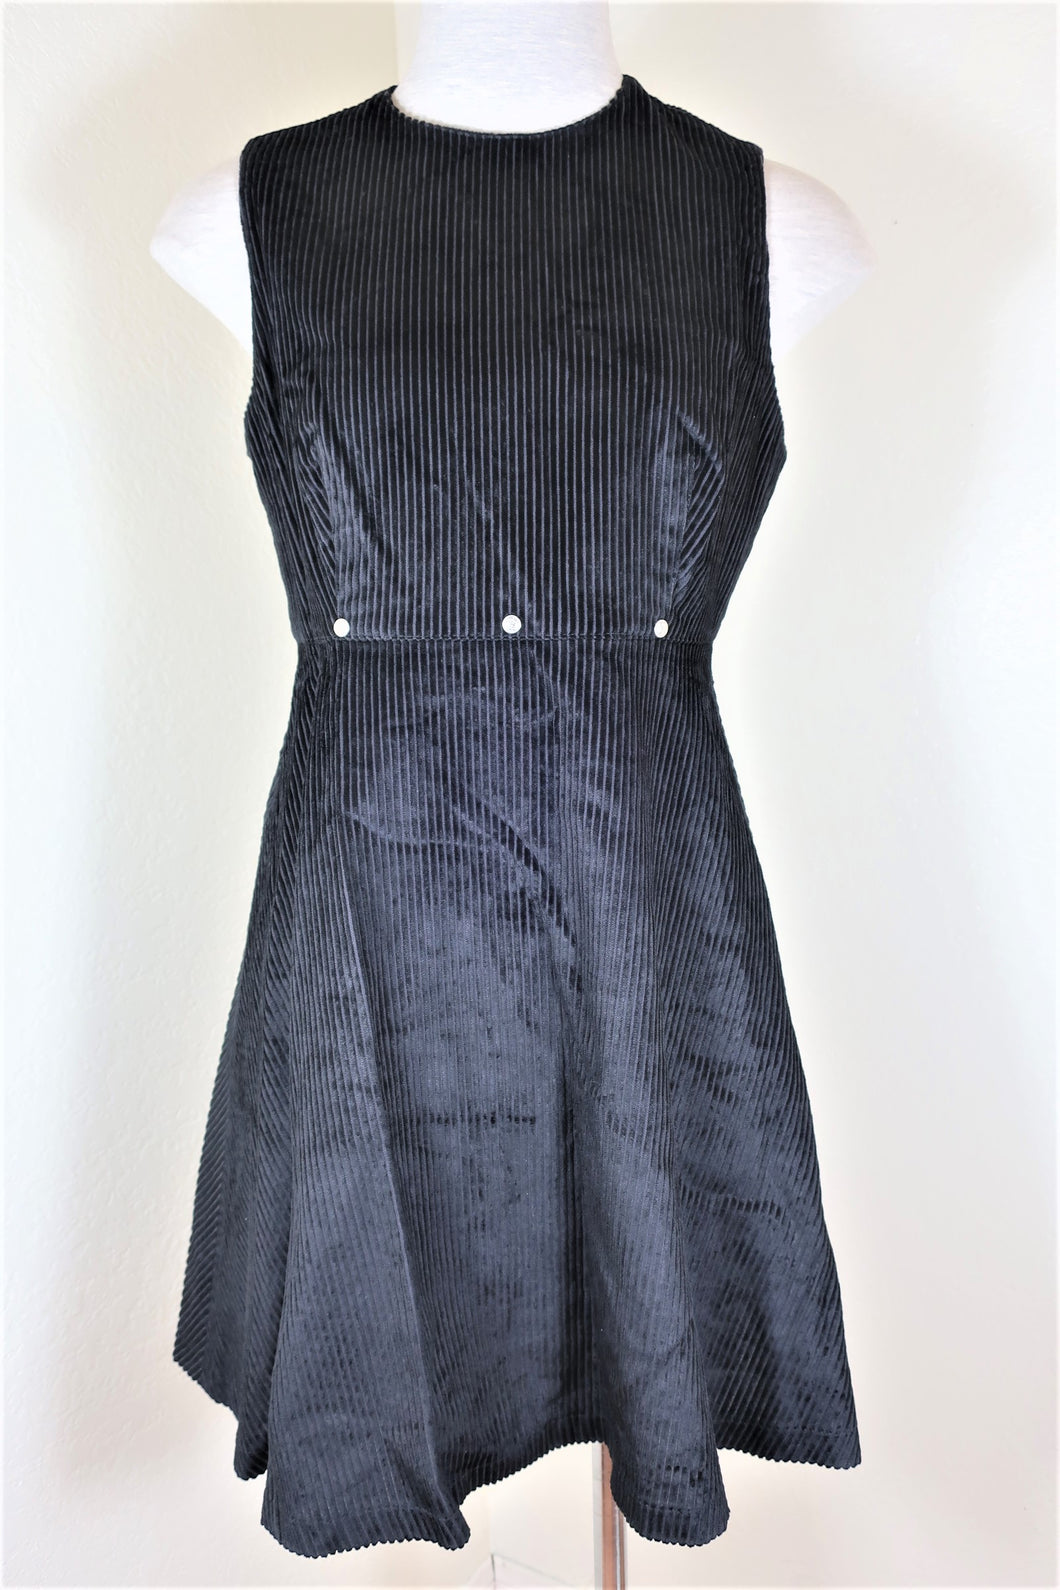 Vintage VERSACE Jeans Couture Cotton Corduroy Black Dress XS Small 26 40 3 4